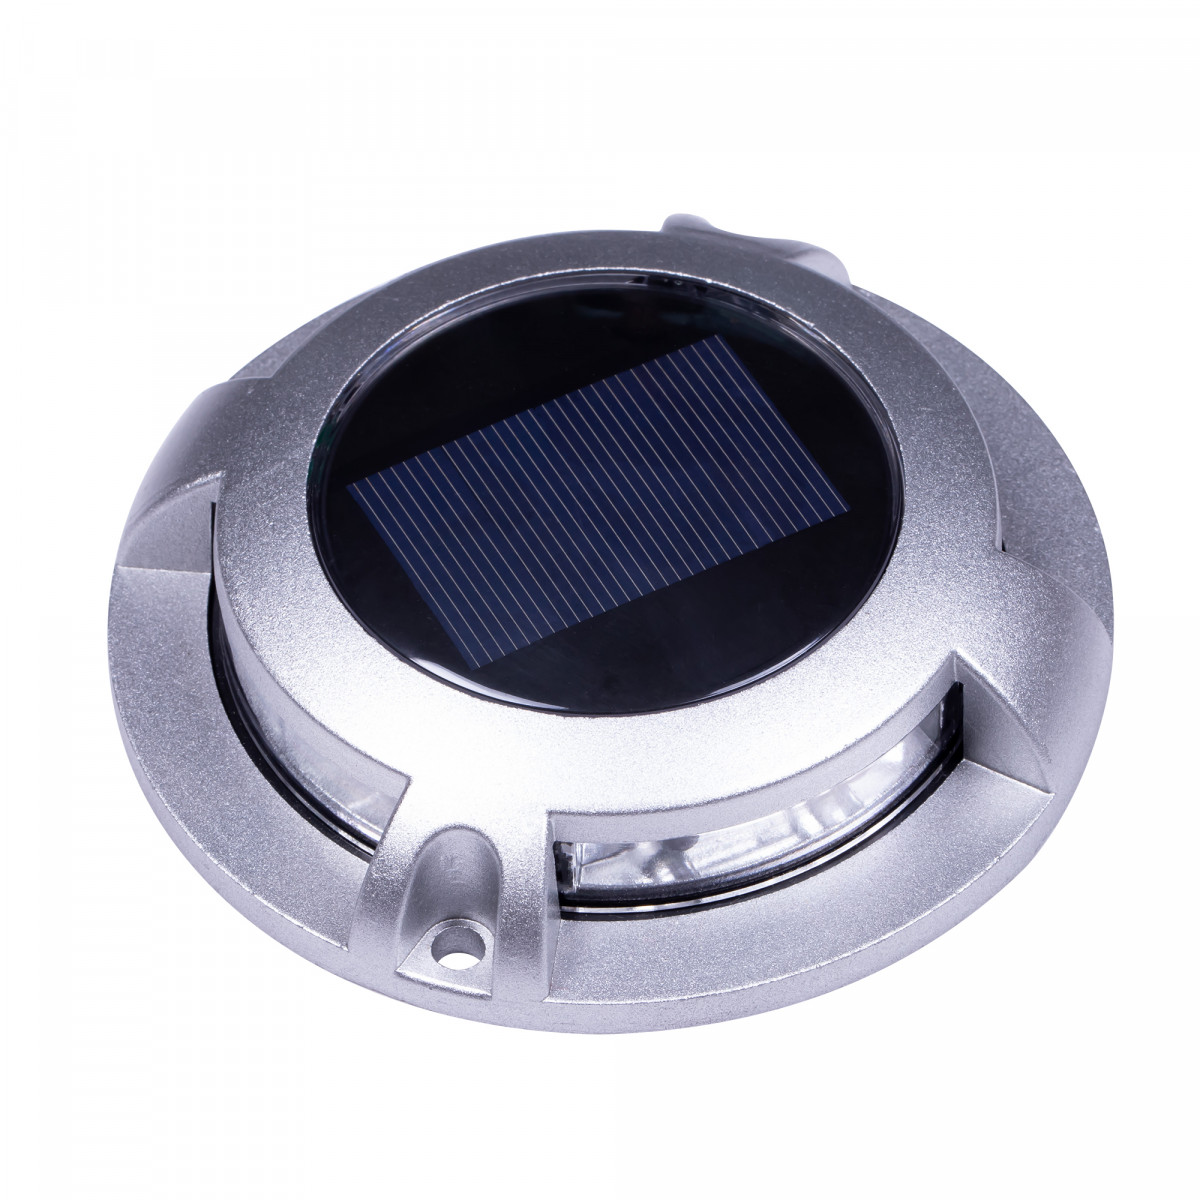 spot au sol - Solar LED Decklight - lampe solaire - spot à énergie solaire - Nostalux - Set-6 - acier inoxydable